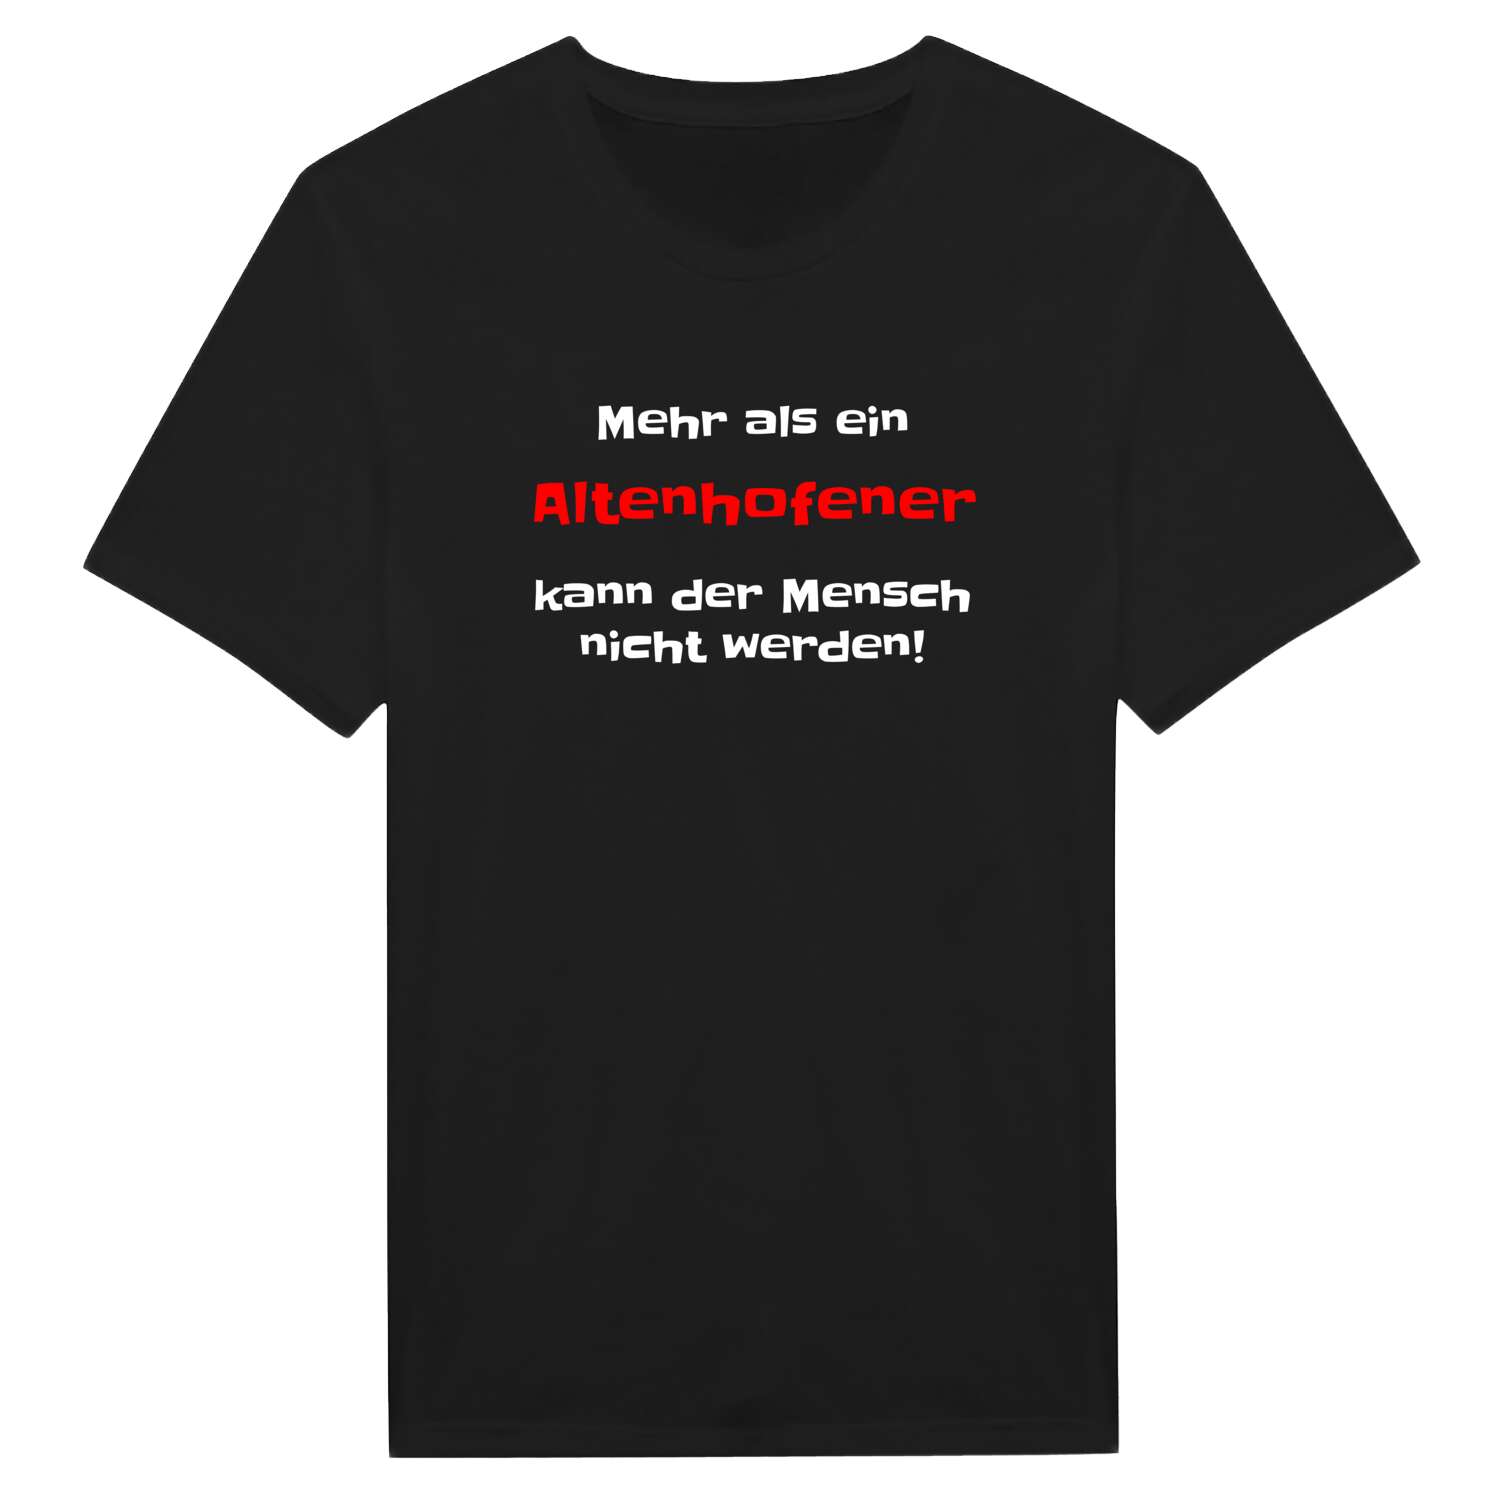 Altenhofen T-Shirt »Mehr als ein«